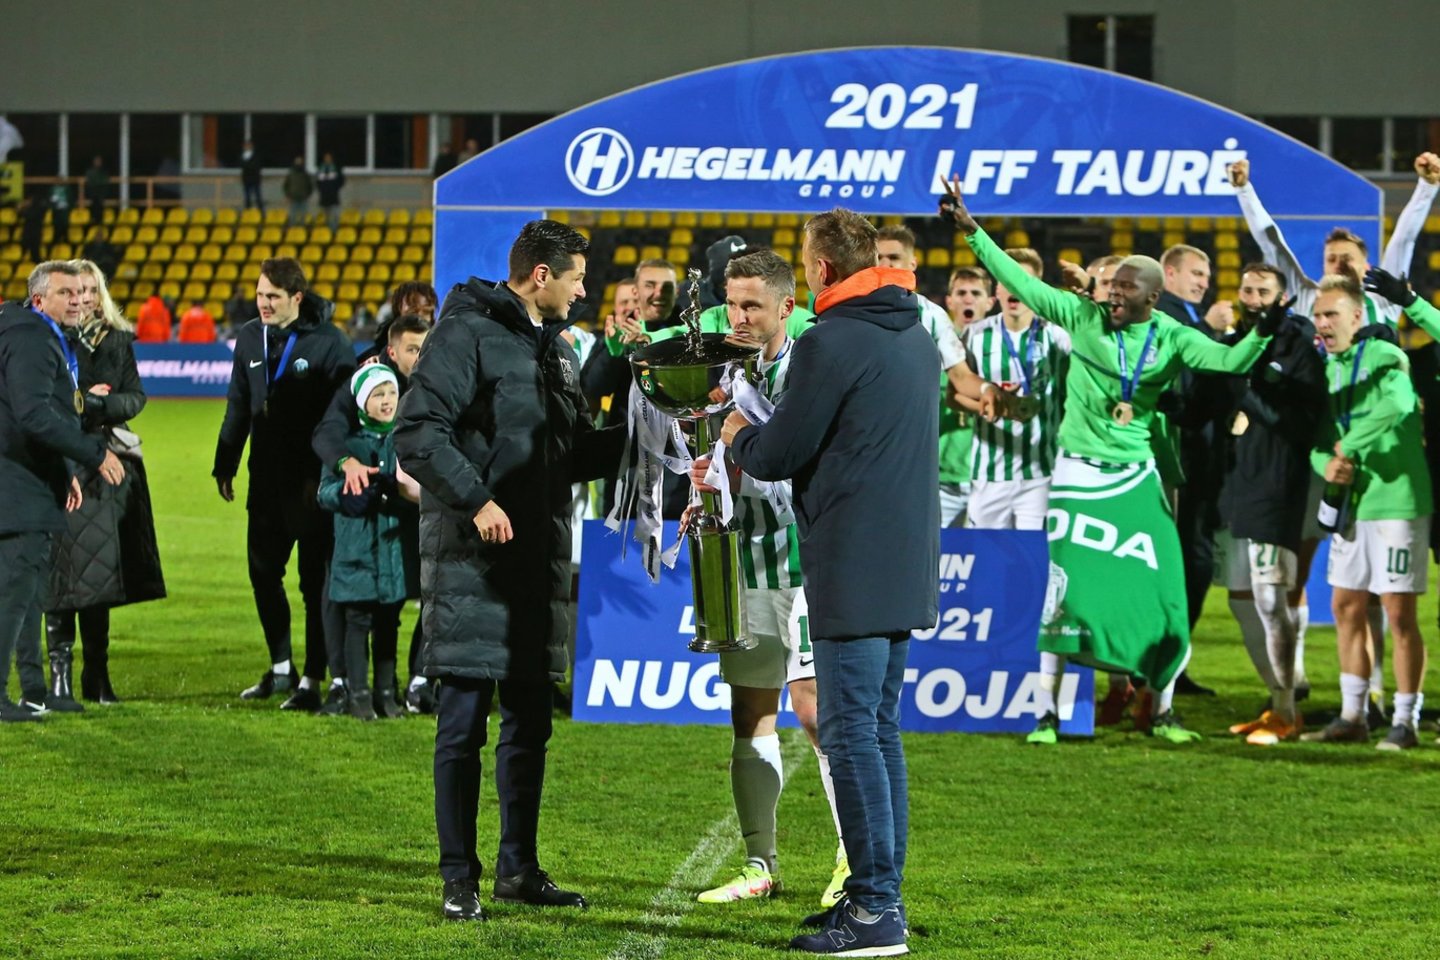 LFF taurę iškovojo Vilniaus „Žalgiris“.<br> G.Šiupario nuotr.